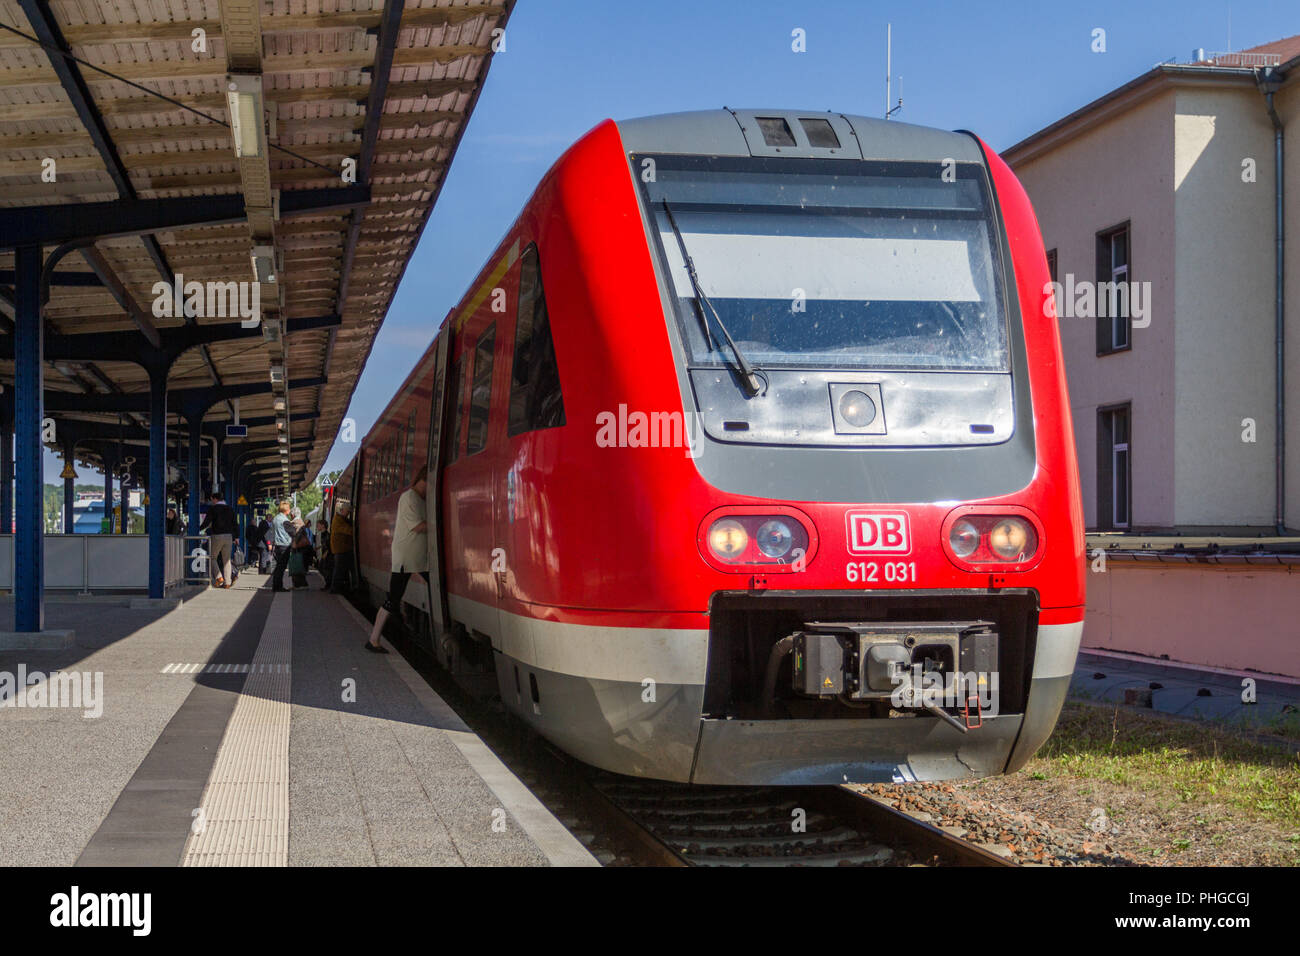 Express-Zug in Gera (Deutschland, Thüringen) Stockfoto